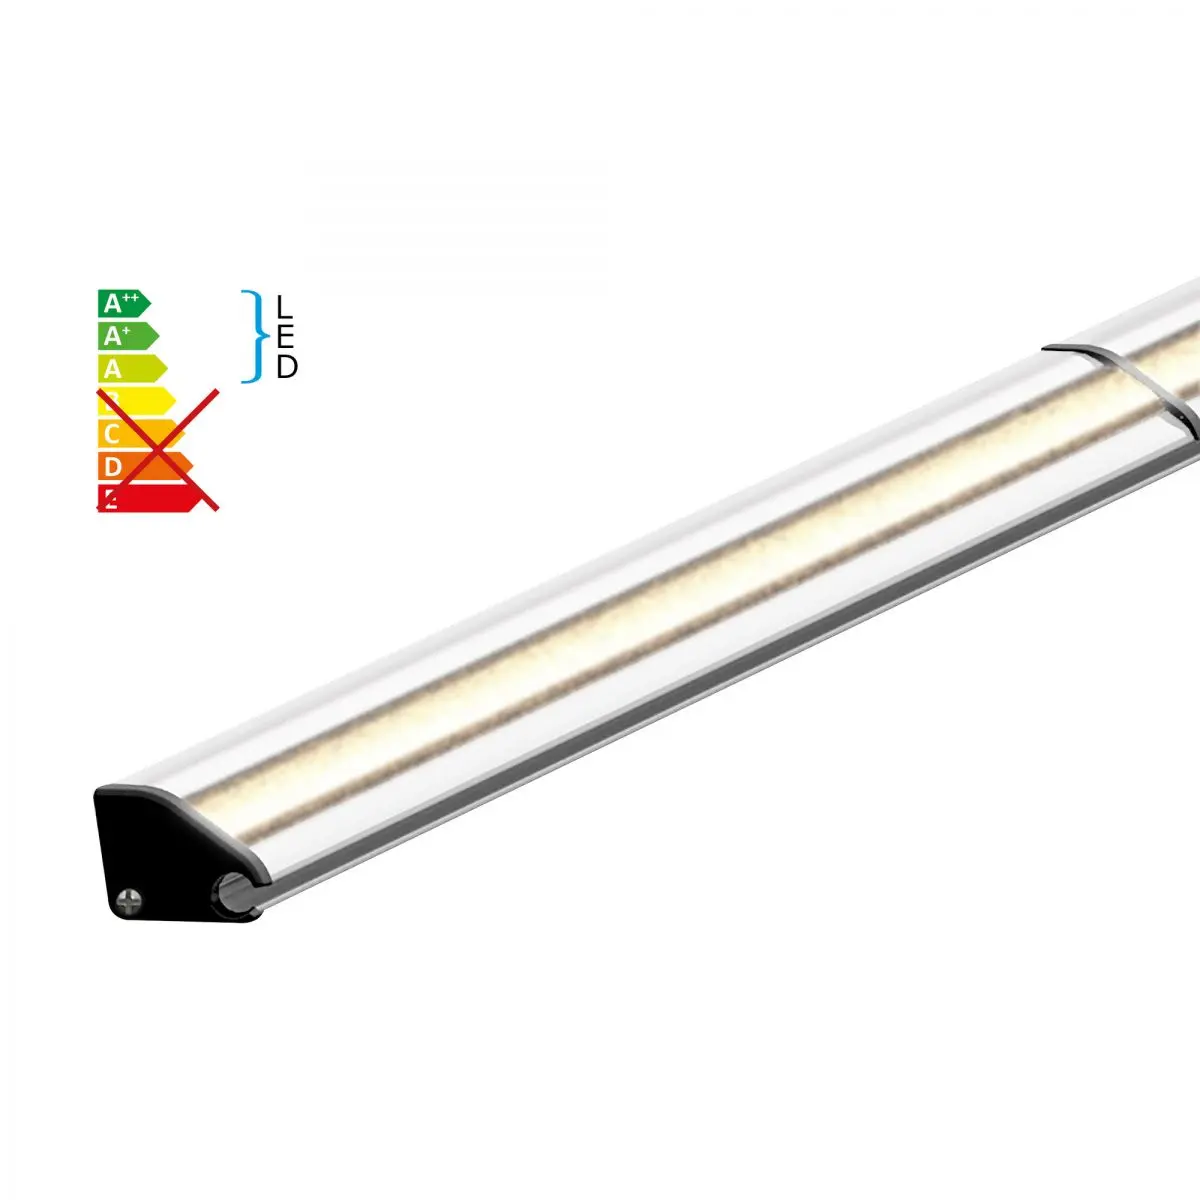 Benzi LED inclusiv profile din aluminiu pentru copertine Dometic seria 1, lungime 5,5 m